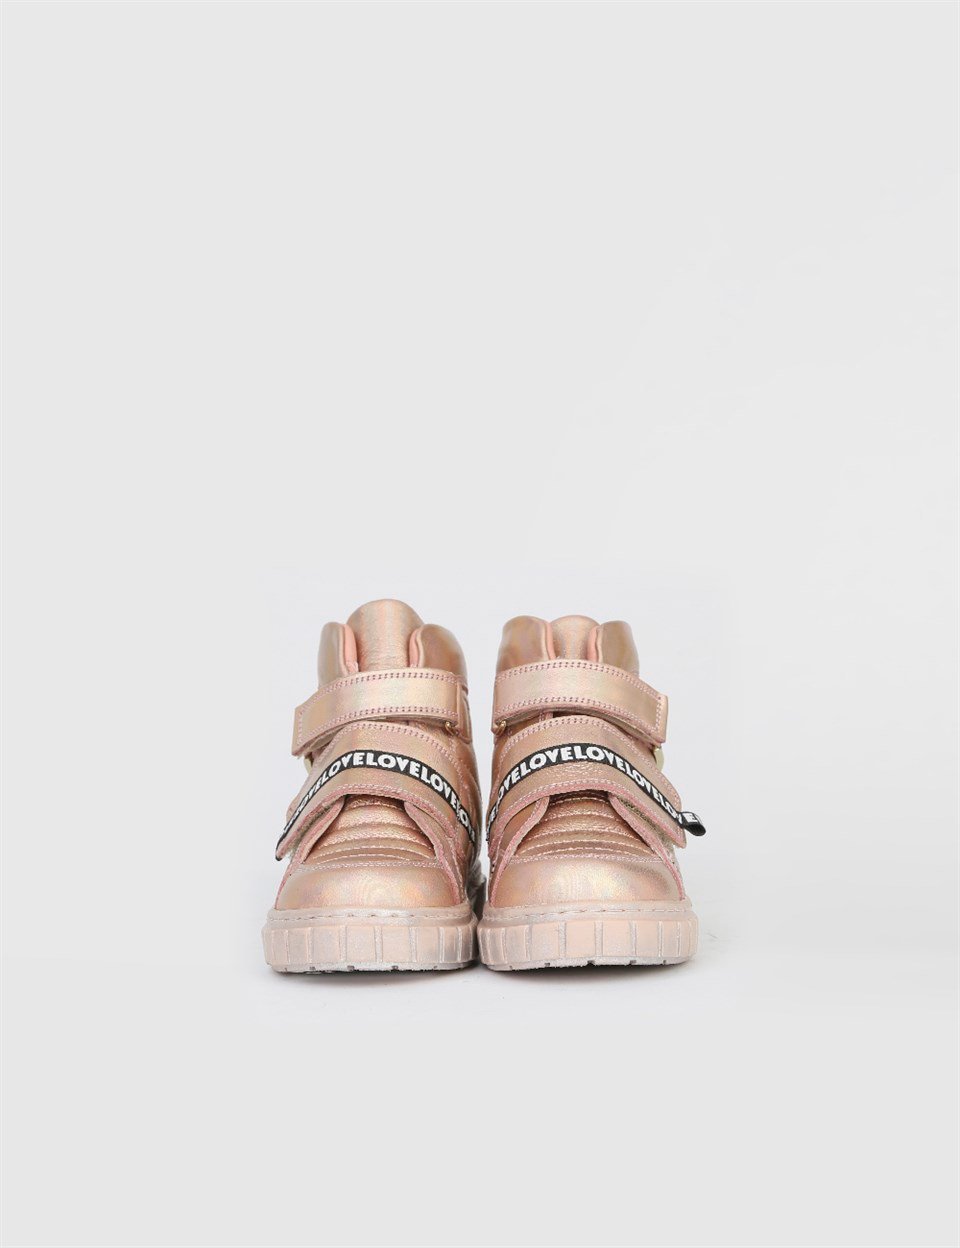 Sonie Powder Pink Leather Girls' Sneaker - İLVİ